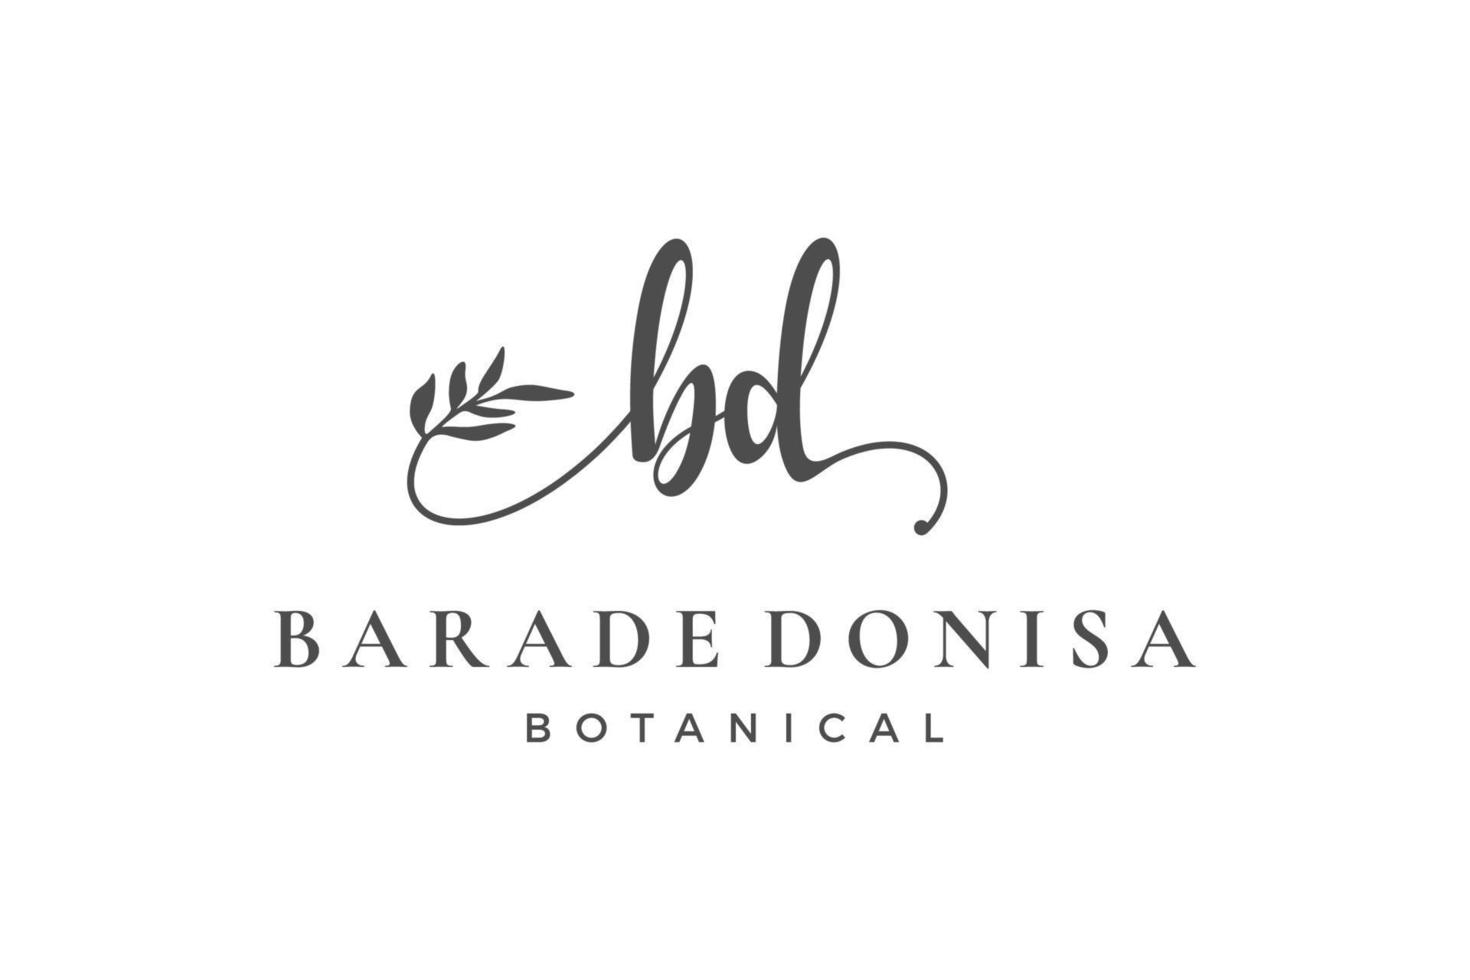 anfangsbuchstabe bd b logo blume, blatt und schönheit. Sammlung von floralen und botanischen Designvorlagen vektor